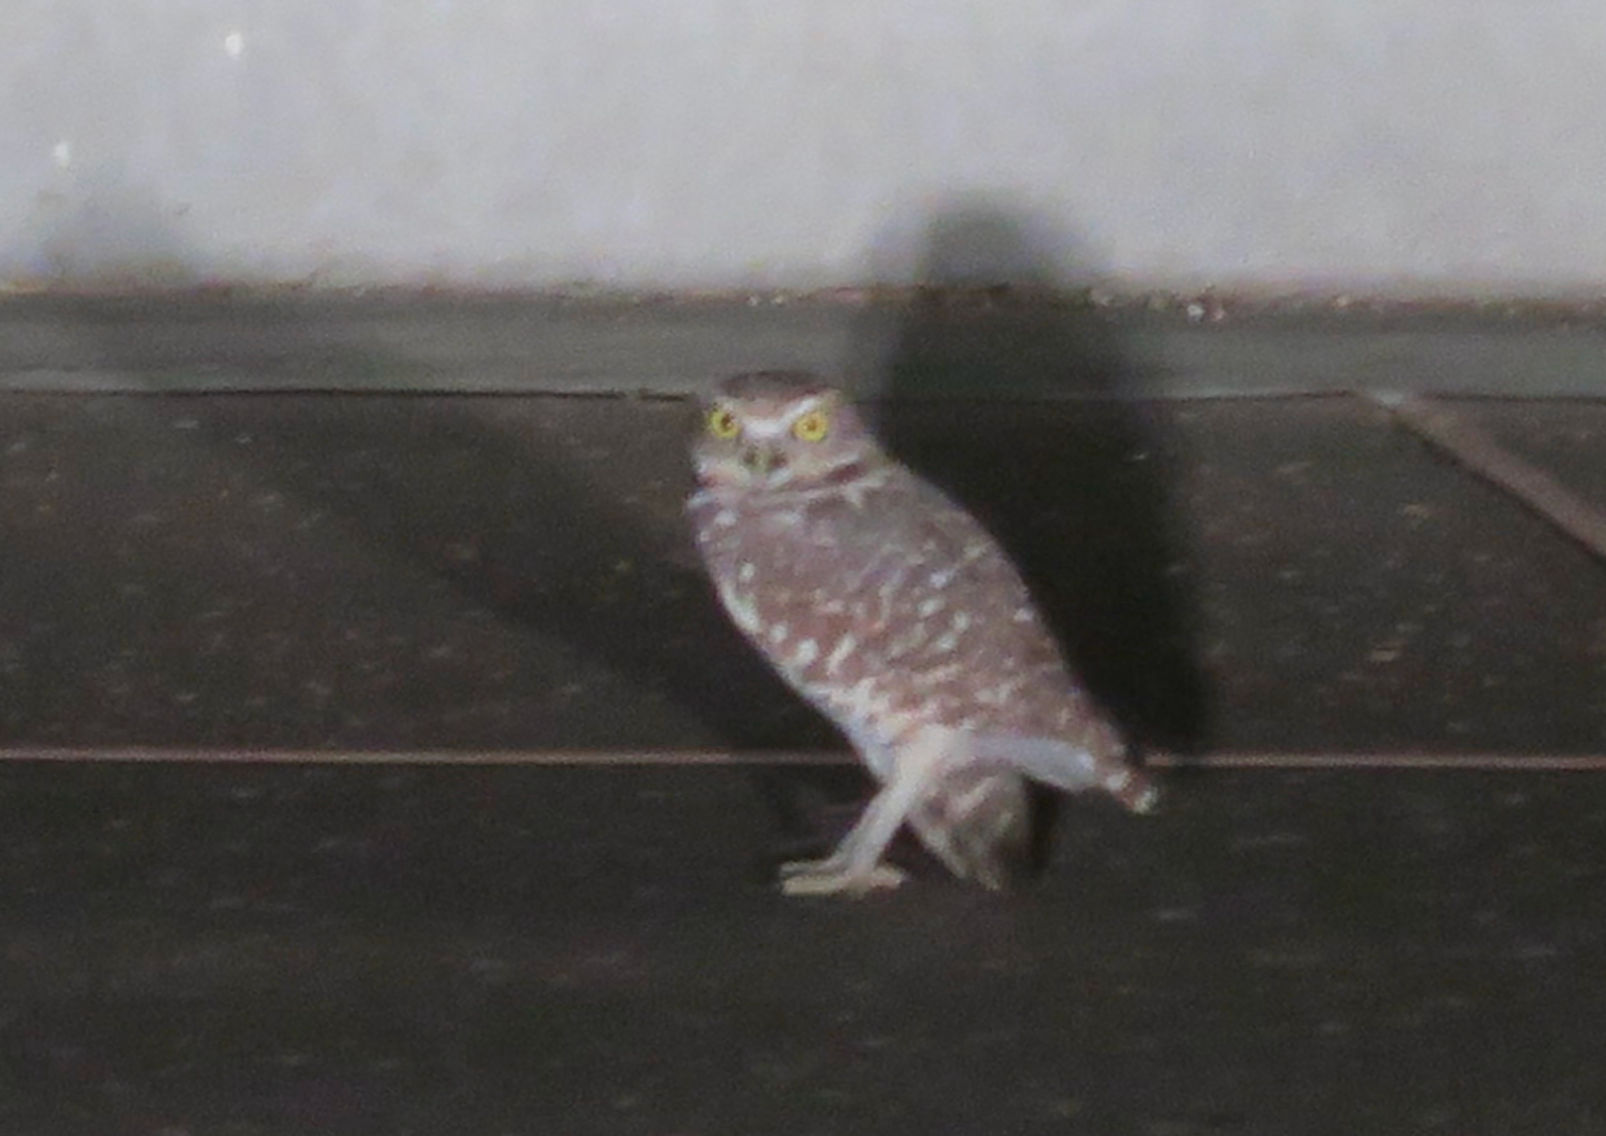 Owl in the neighborhood